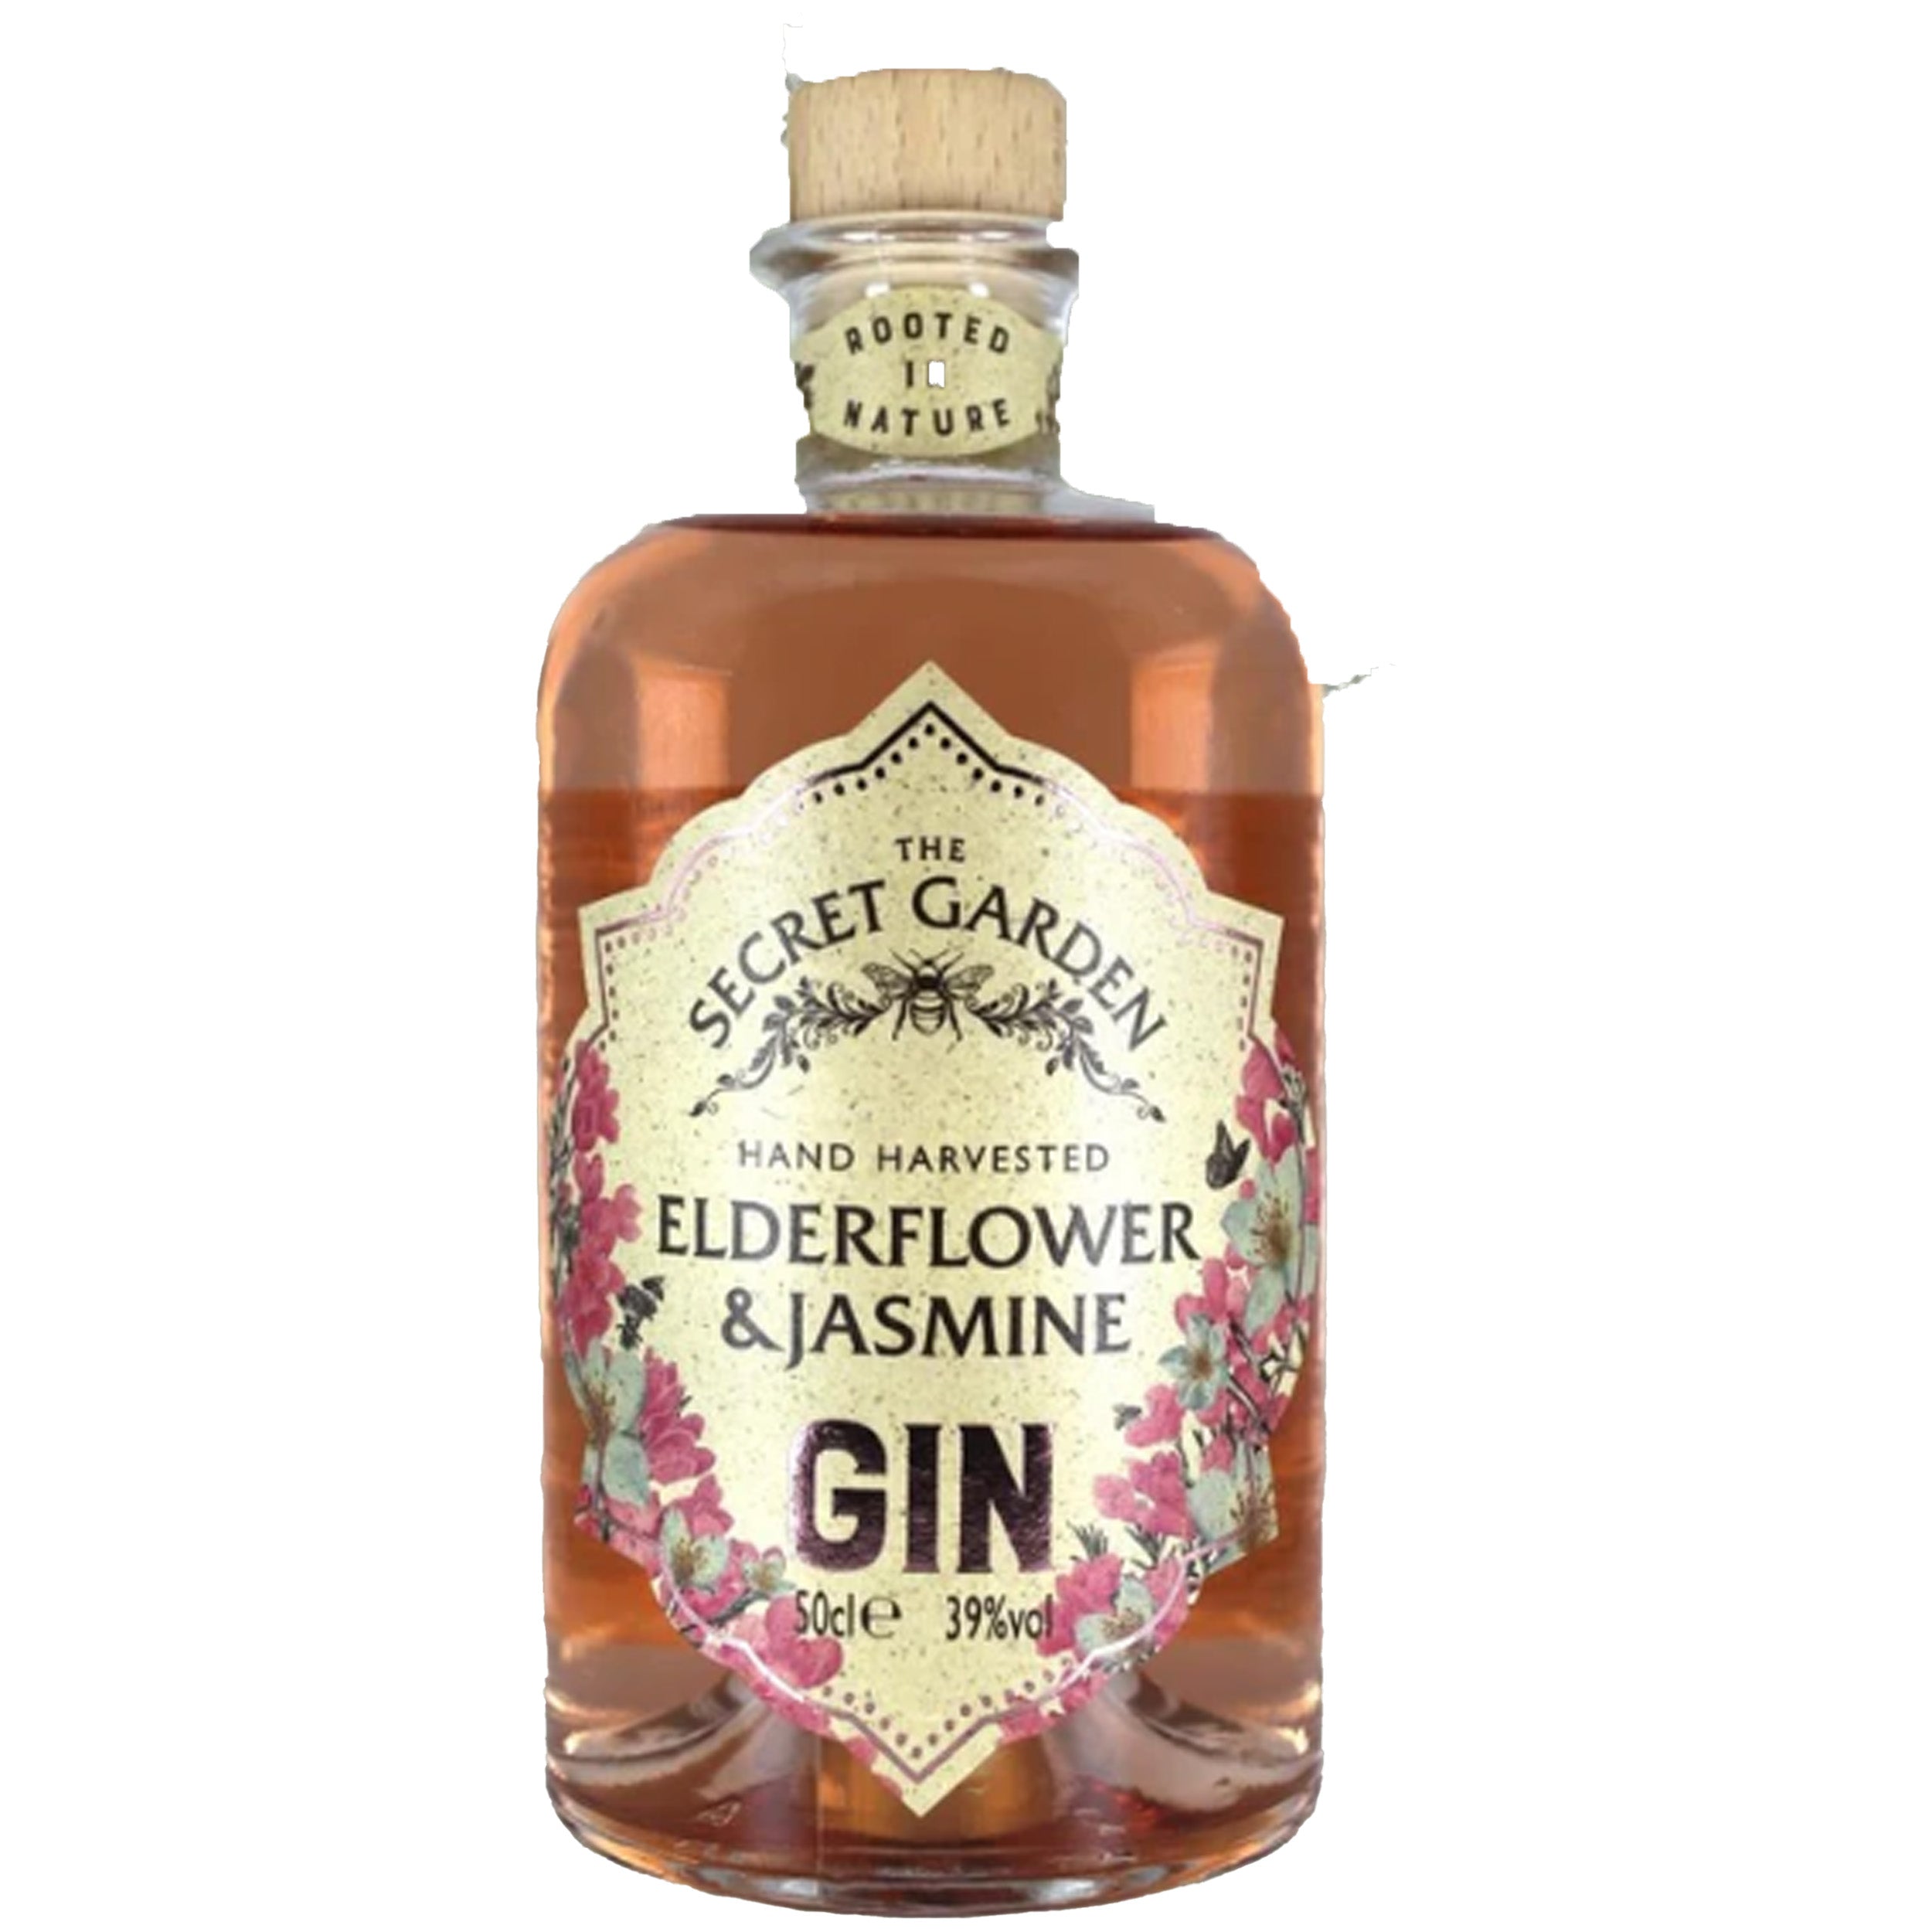 The Herb Garden Pink Elderflower – Chips Liquor And Jasmine Gin